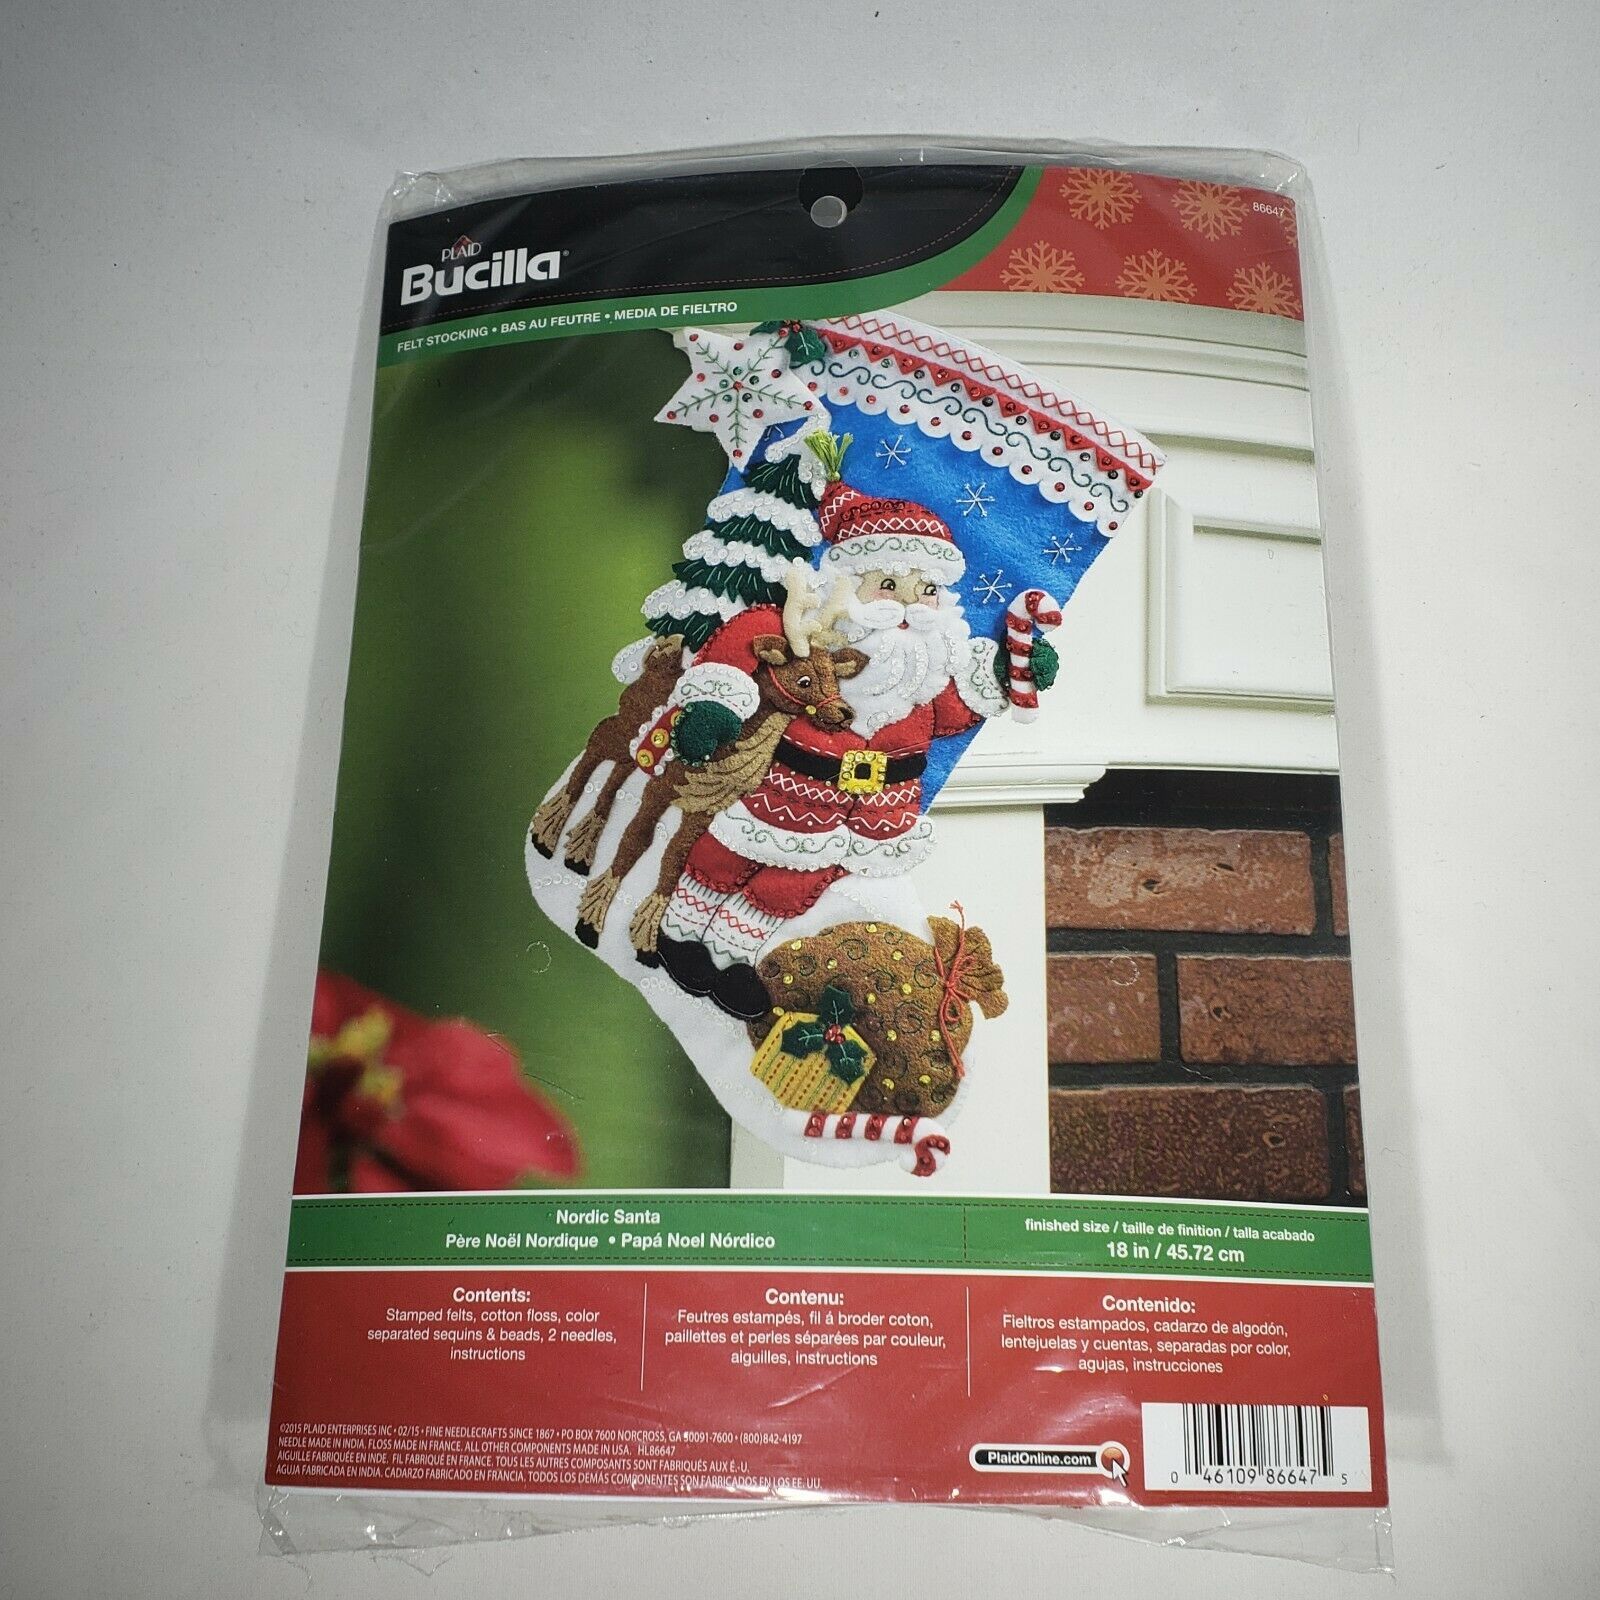 Plaid Bucilla Nordic Santa Christmas Felt Stocking Kit #86647 Sealed Complete - $32.95